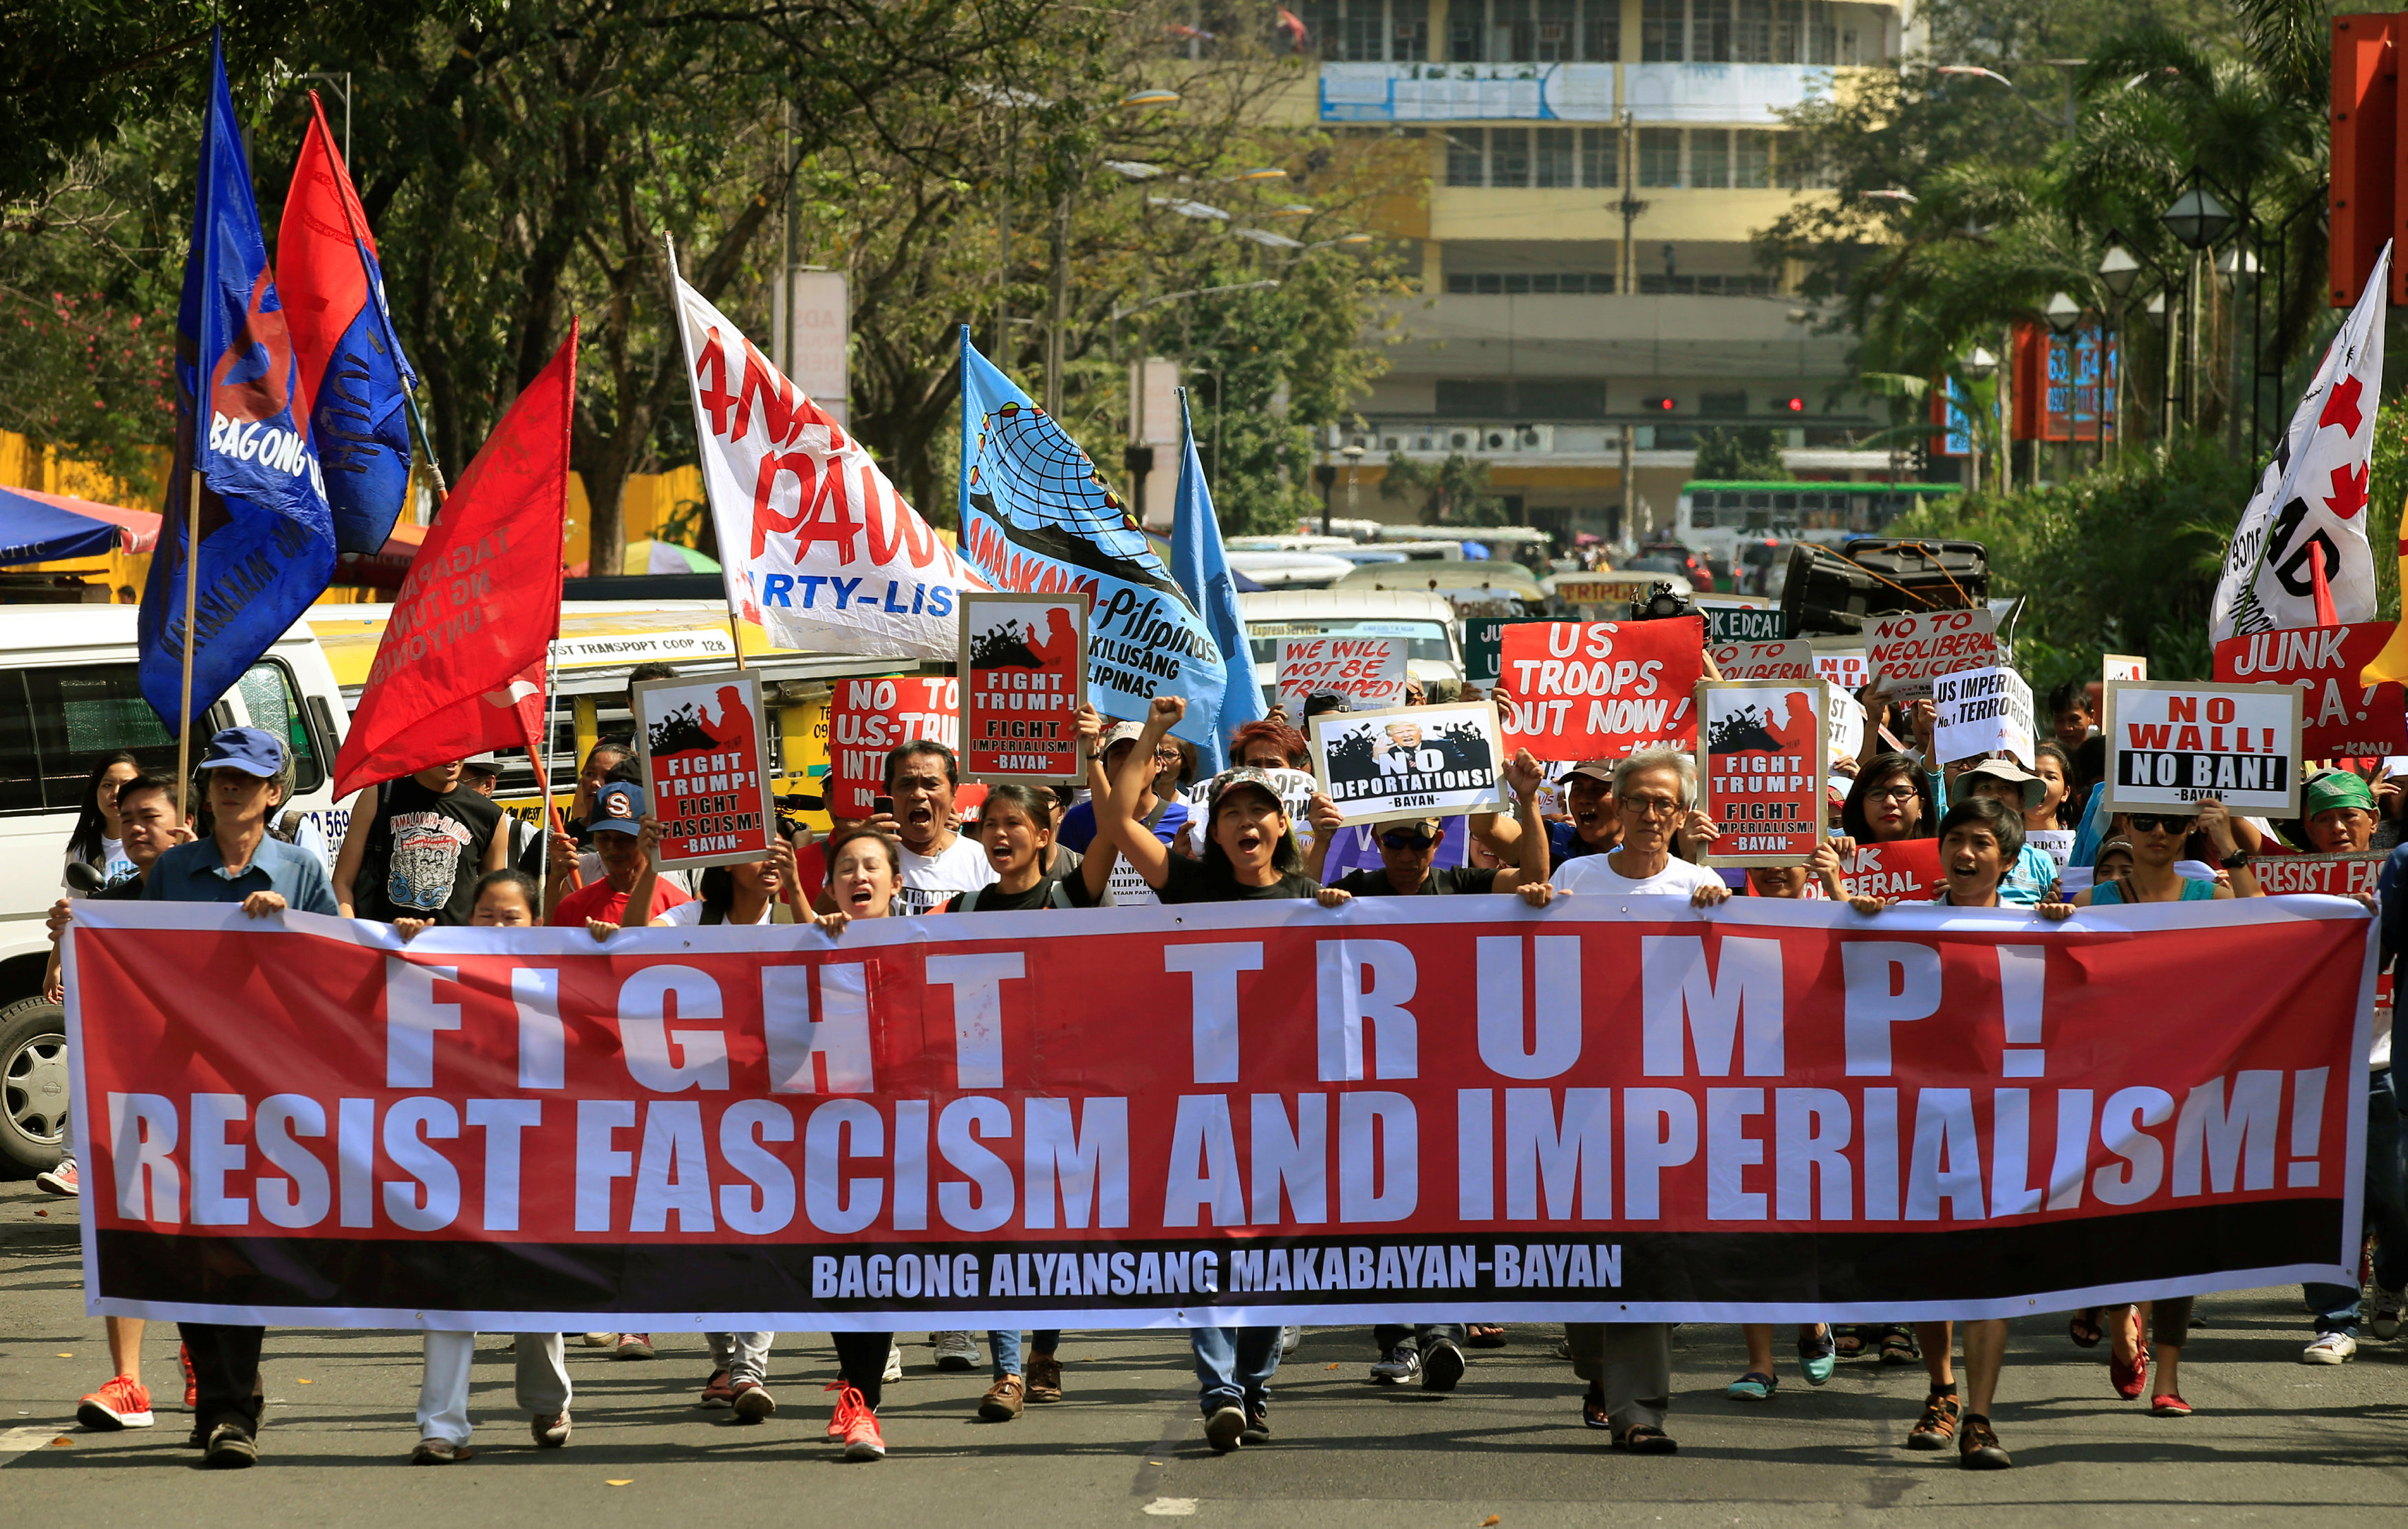 لافتة تطالب بمحاربة فاشية وامبريالية ترامب خلال مظاهرة فى الفلبين